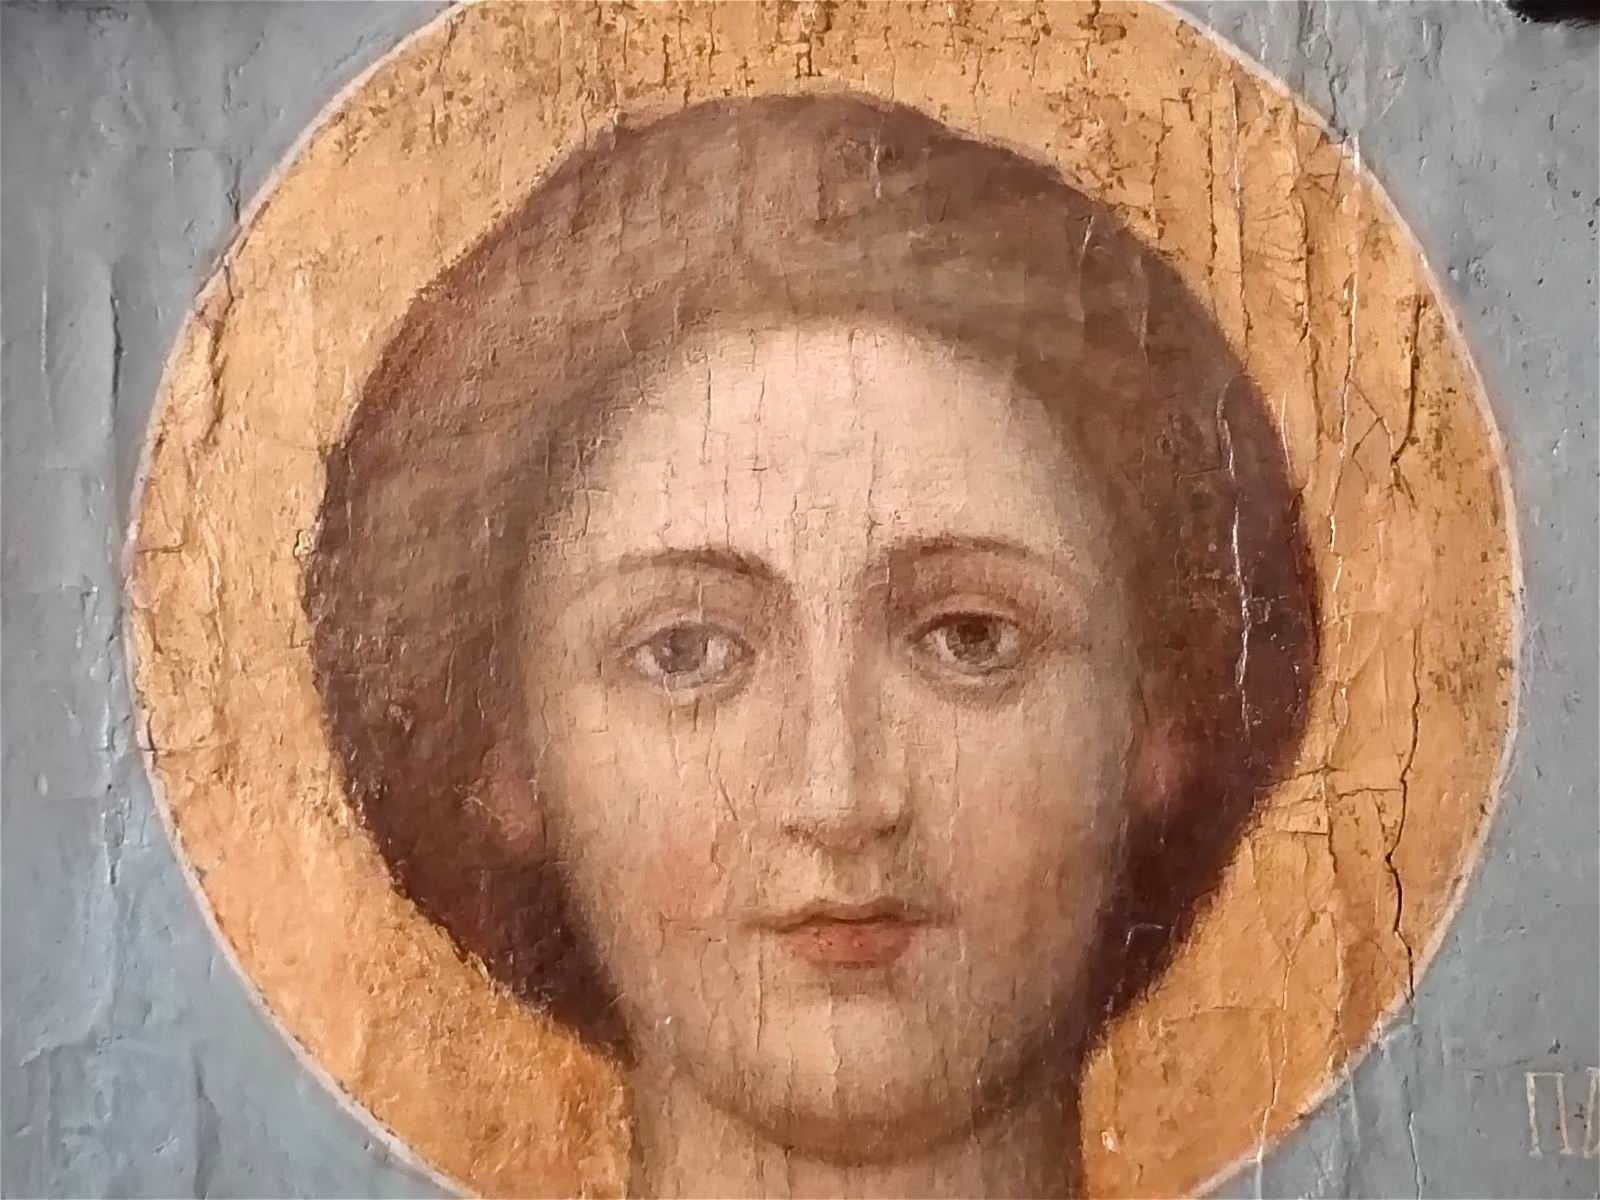 Большая икона целитель Пантелеймон XIX век